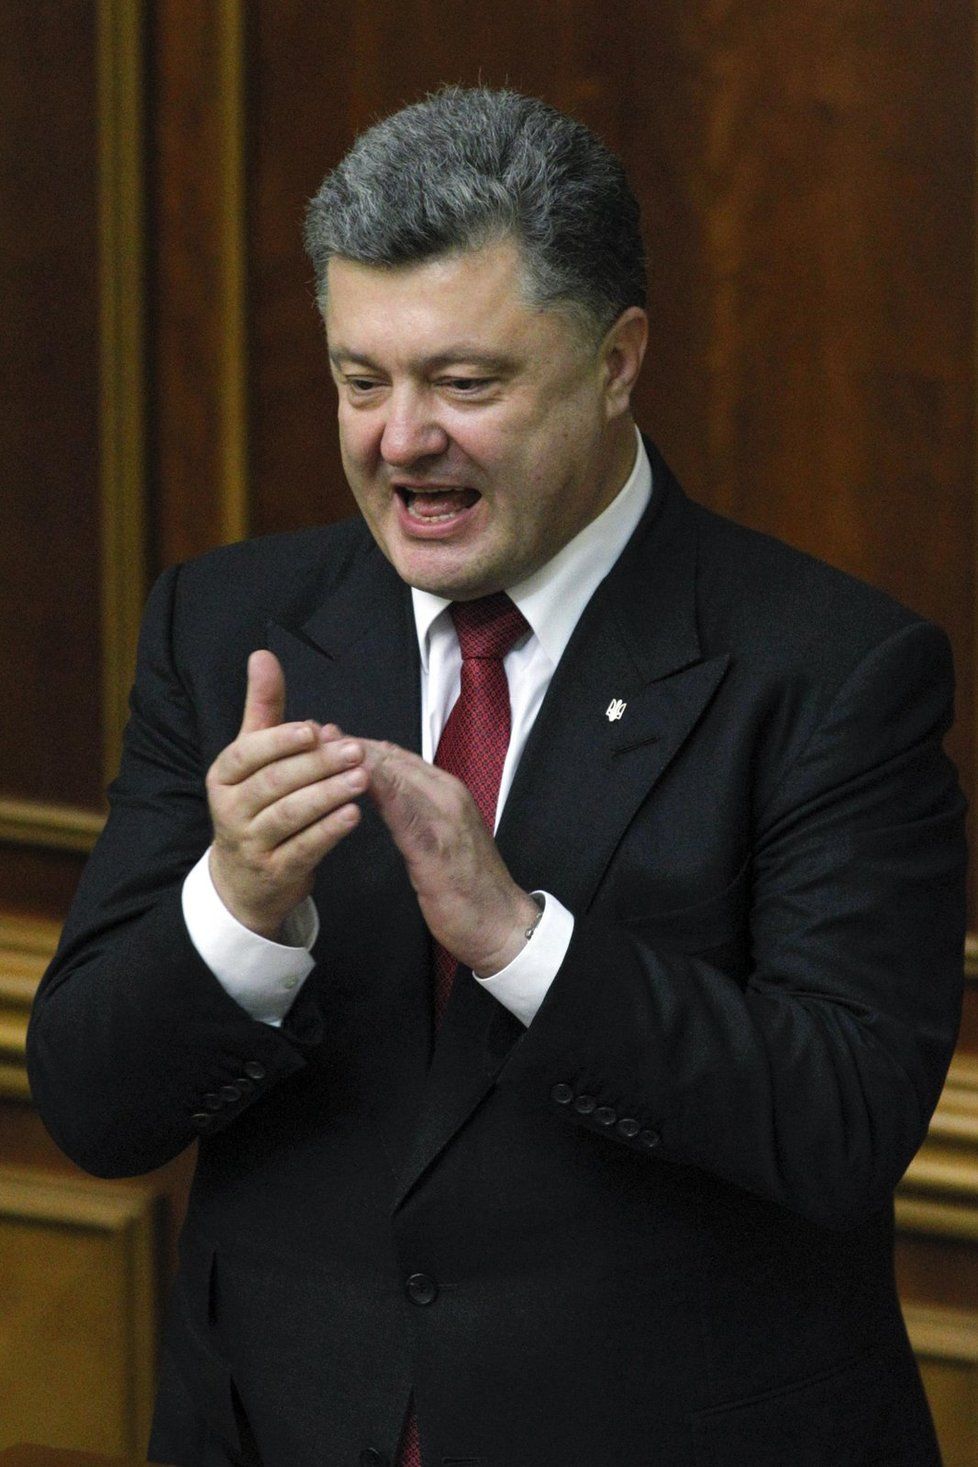 Janukovyč pláchl do Ruska během nepokojů.